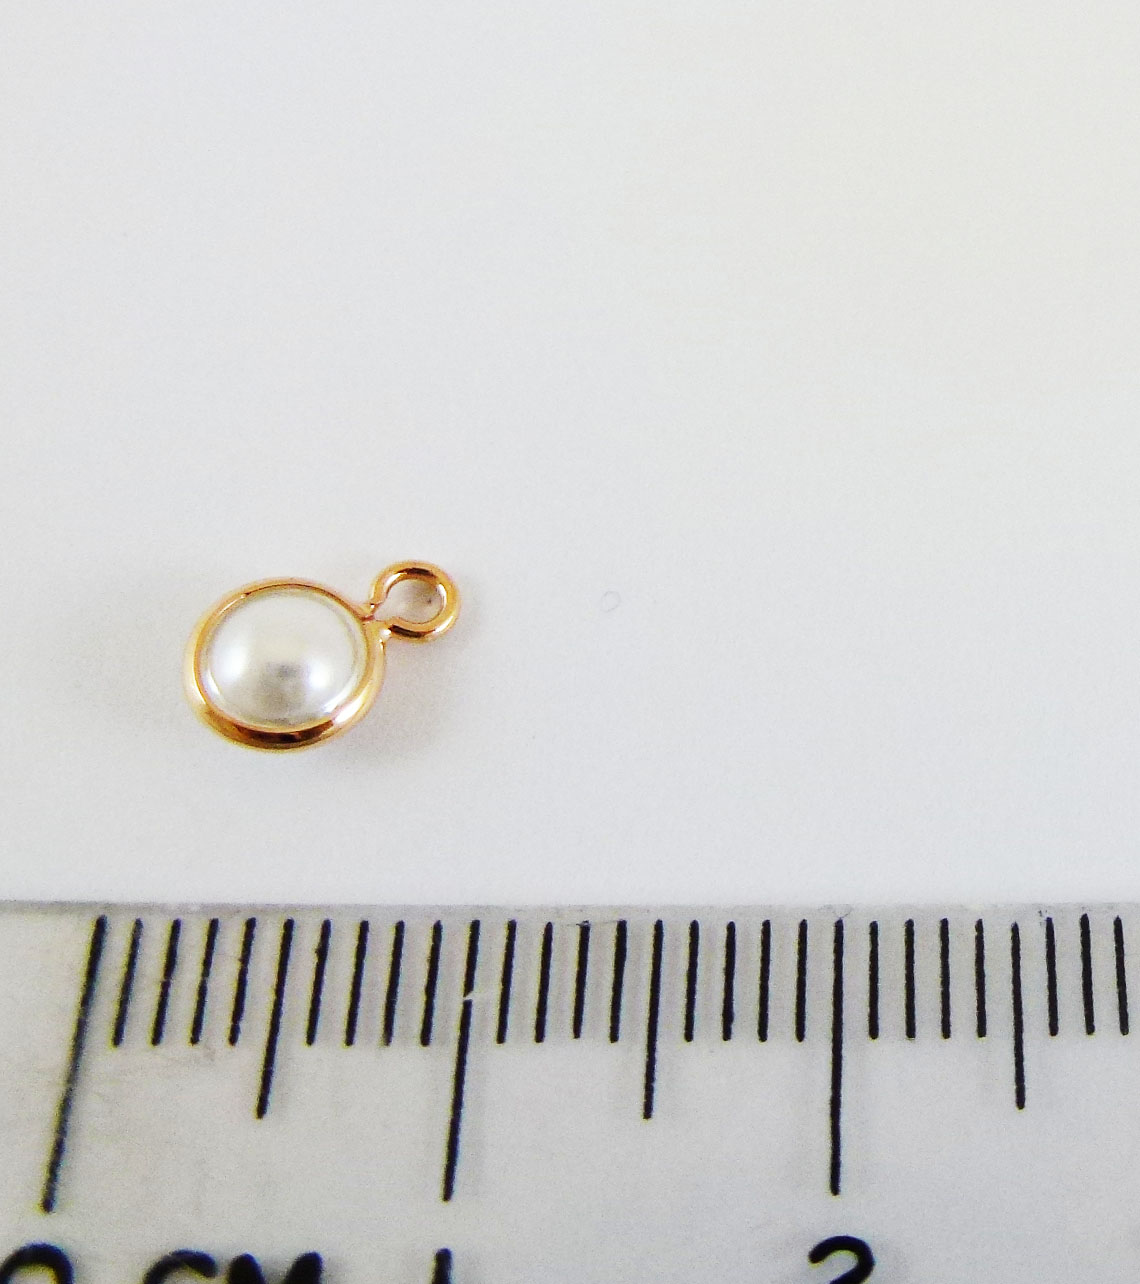 5mm銅鍍玫瑰金單孔圓扁珠-白色